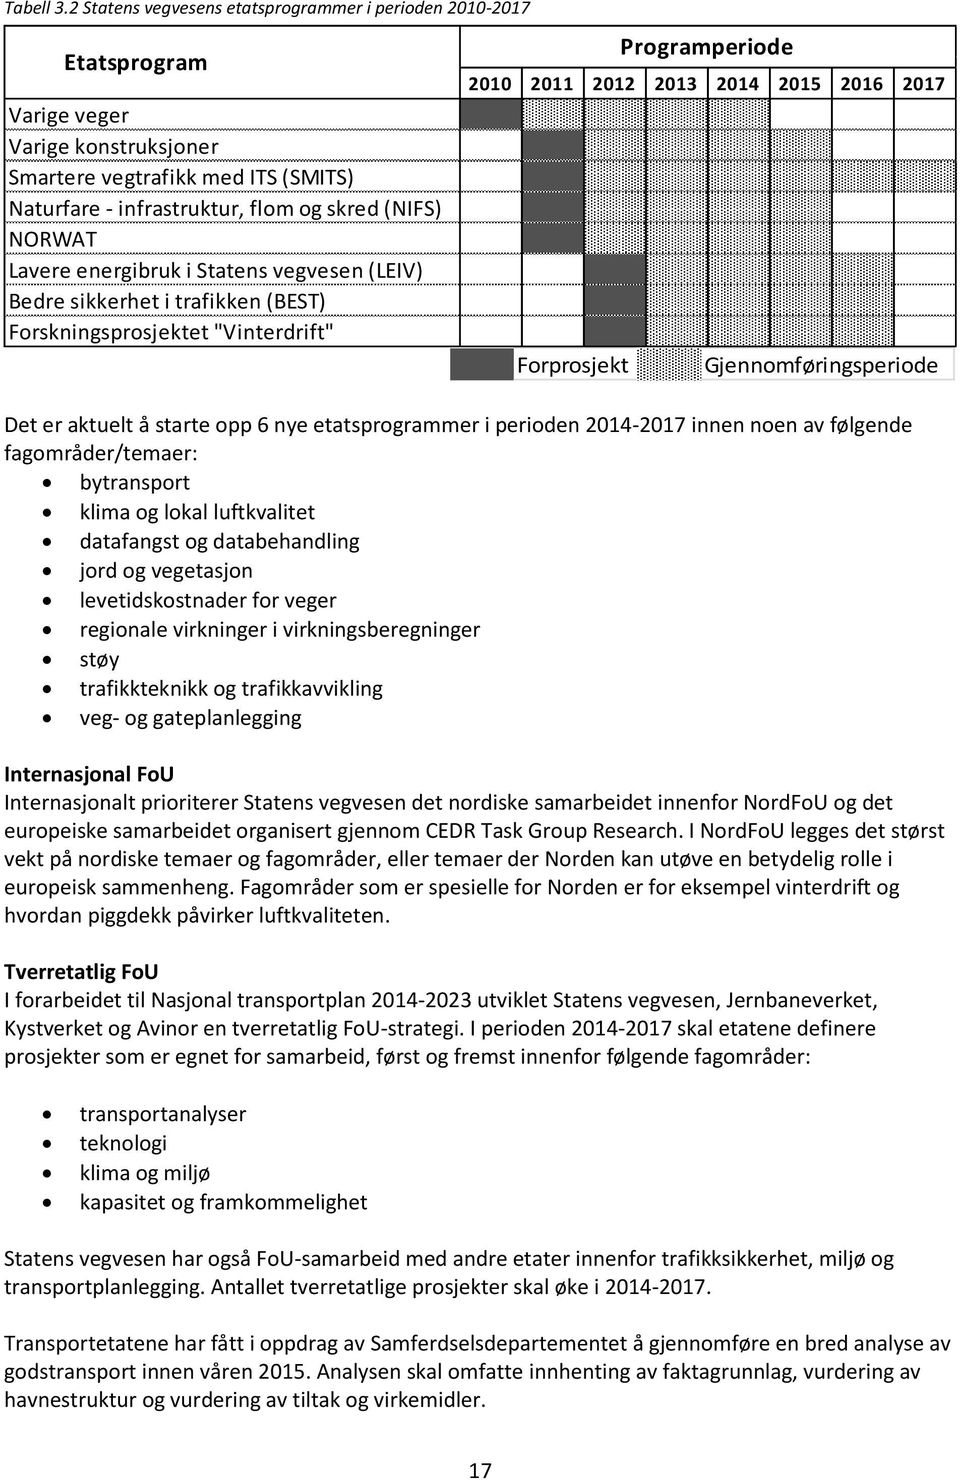 Lavere energibruk i Statens vegvesen (LEIV) Bedre sikkerhet i trafikken (BEST) Forskningsprosjektet "Vinterdrift" 2010 2011 2012 2013 2014 2015 2016 2017 Forprosjekt Programperiode